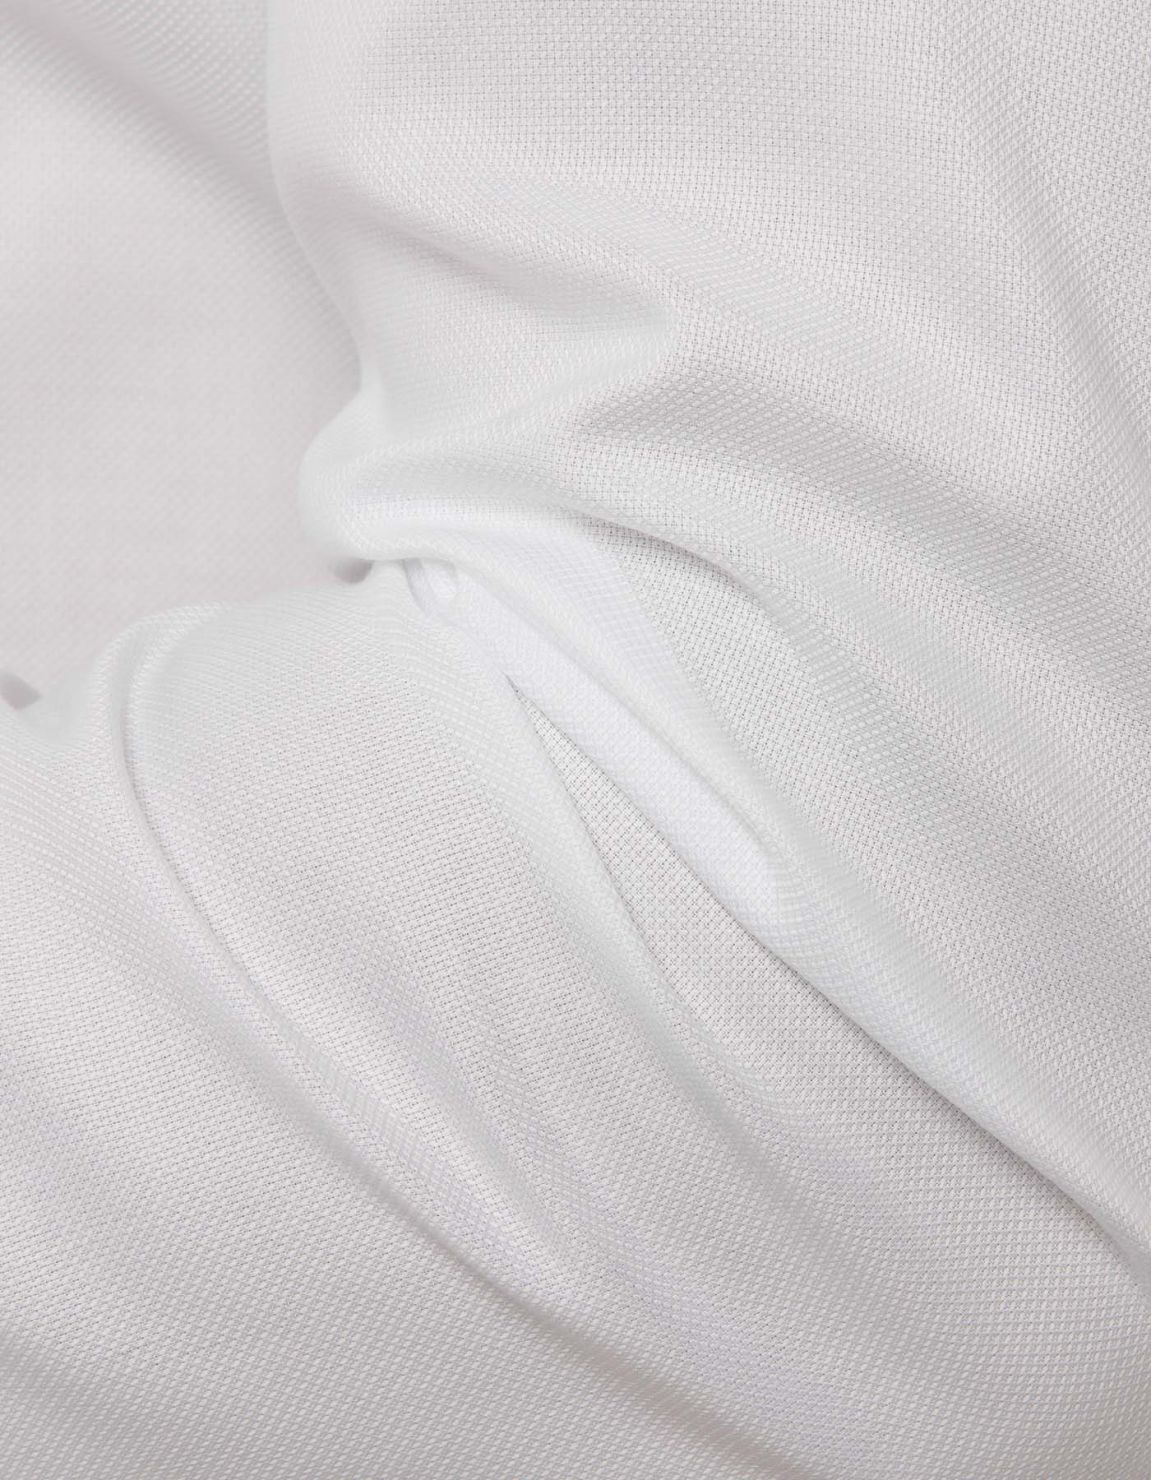 Hemd Uni Kragen Button-down Oxford Weiß Evolution Classic Fit 2